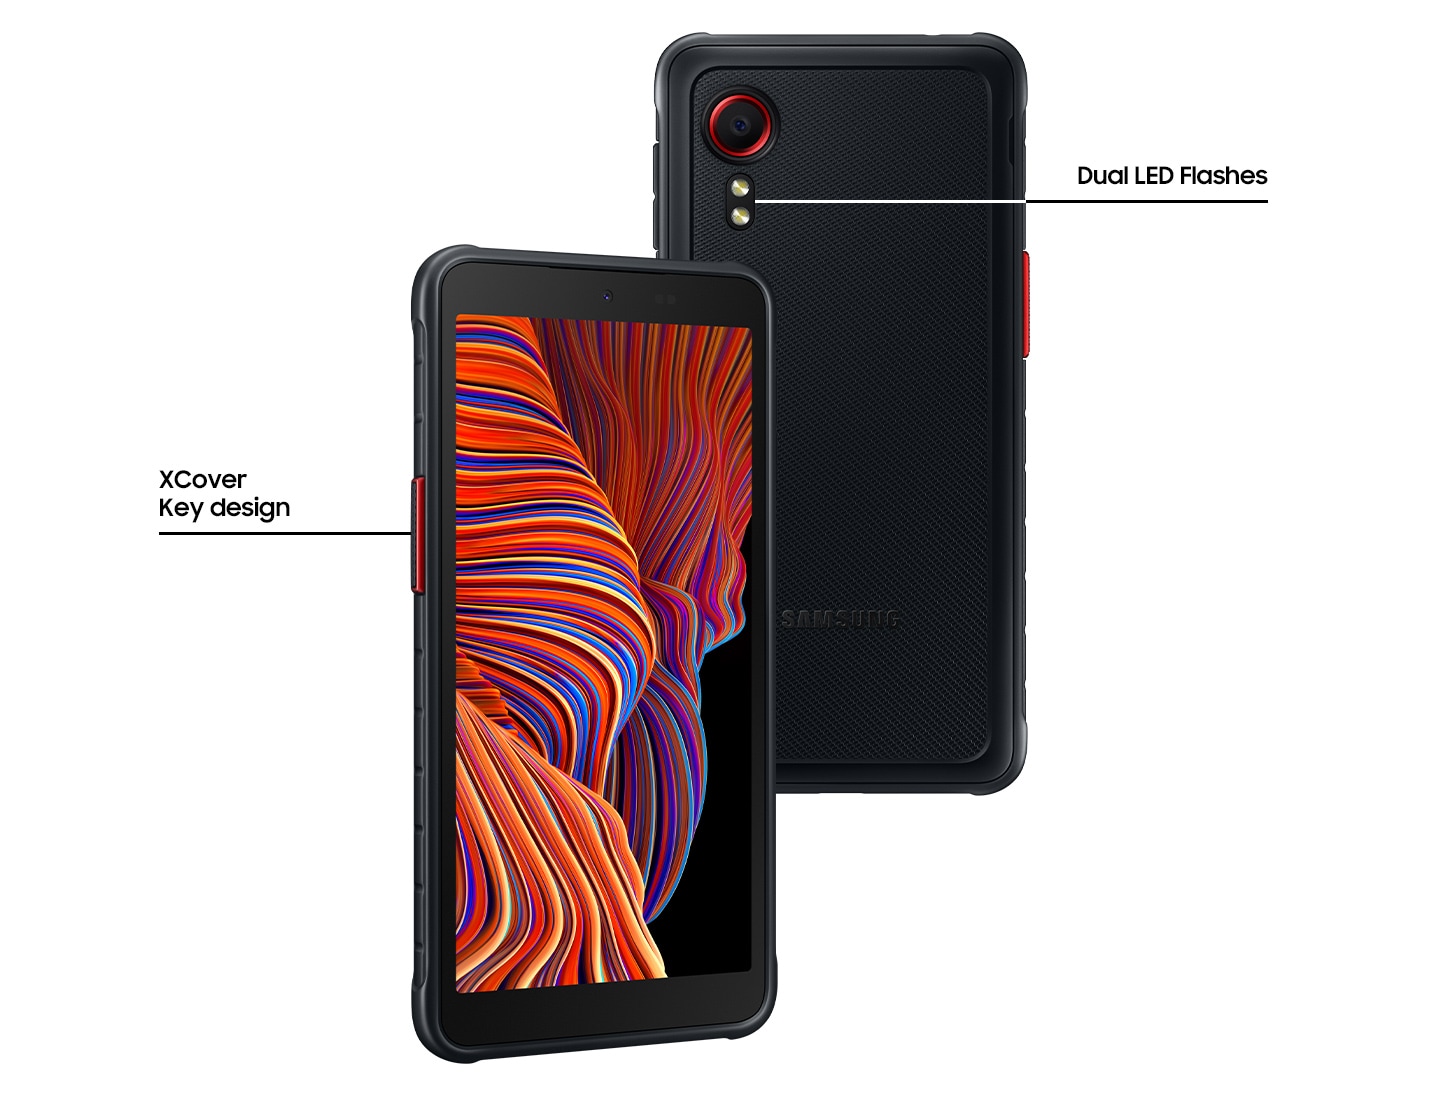 Zwei Galaxy XCover 5 in Schwarz stehen leicht überlappend nebeneinander. Das gekippte Smartphone mit der orangefarbenen Liniengrafik auf dem Display ist auf der linken Seite und zeigt das XCover Key Design. Die andere Rückansicht des Galaxy XCover 5 zeigt Dual LED Flashes. 